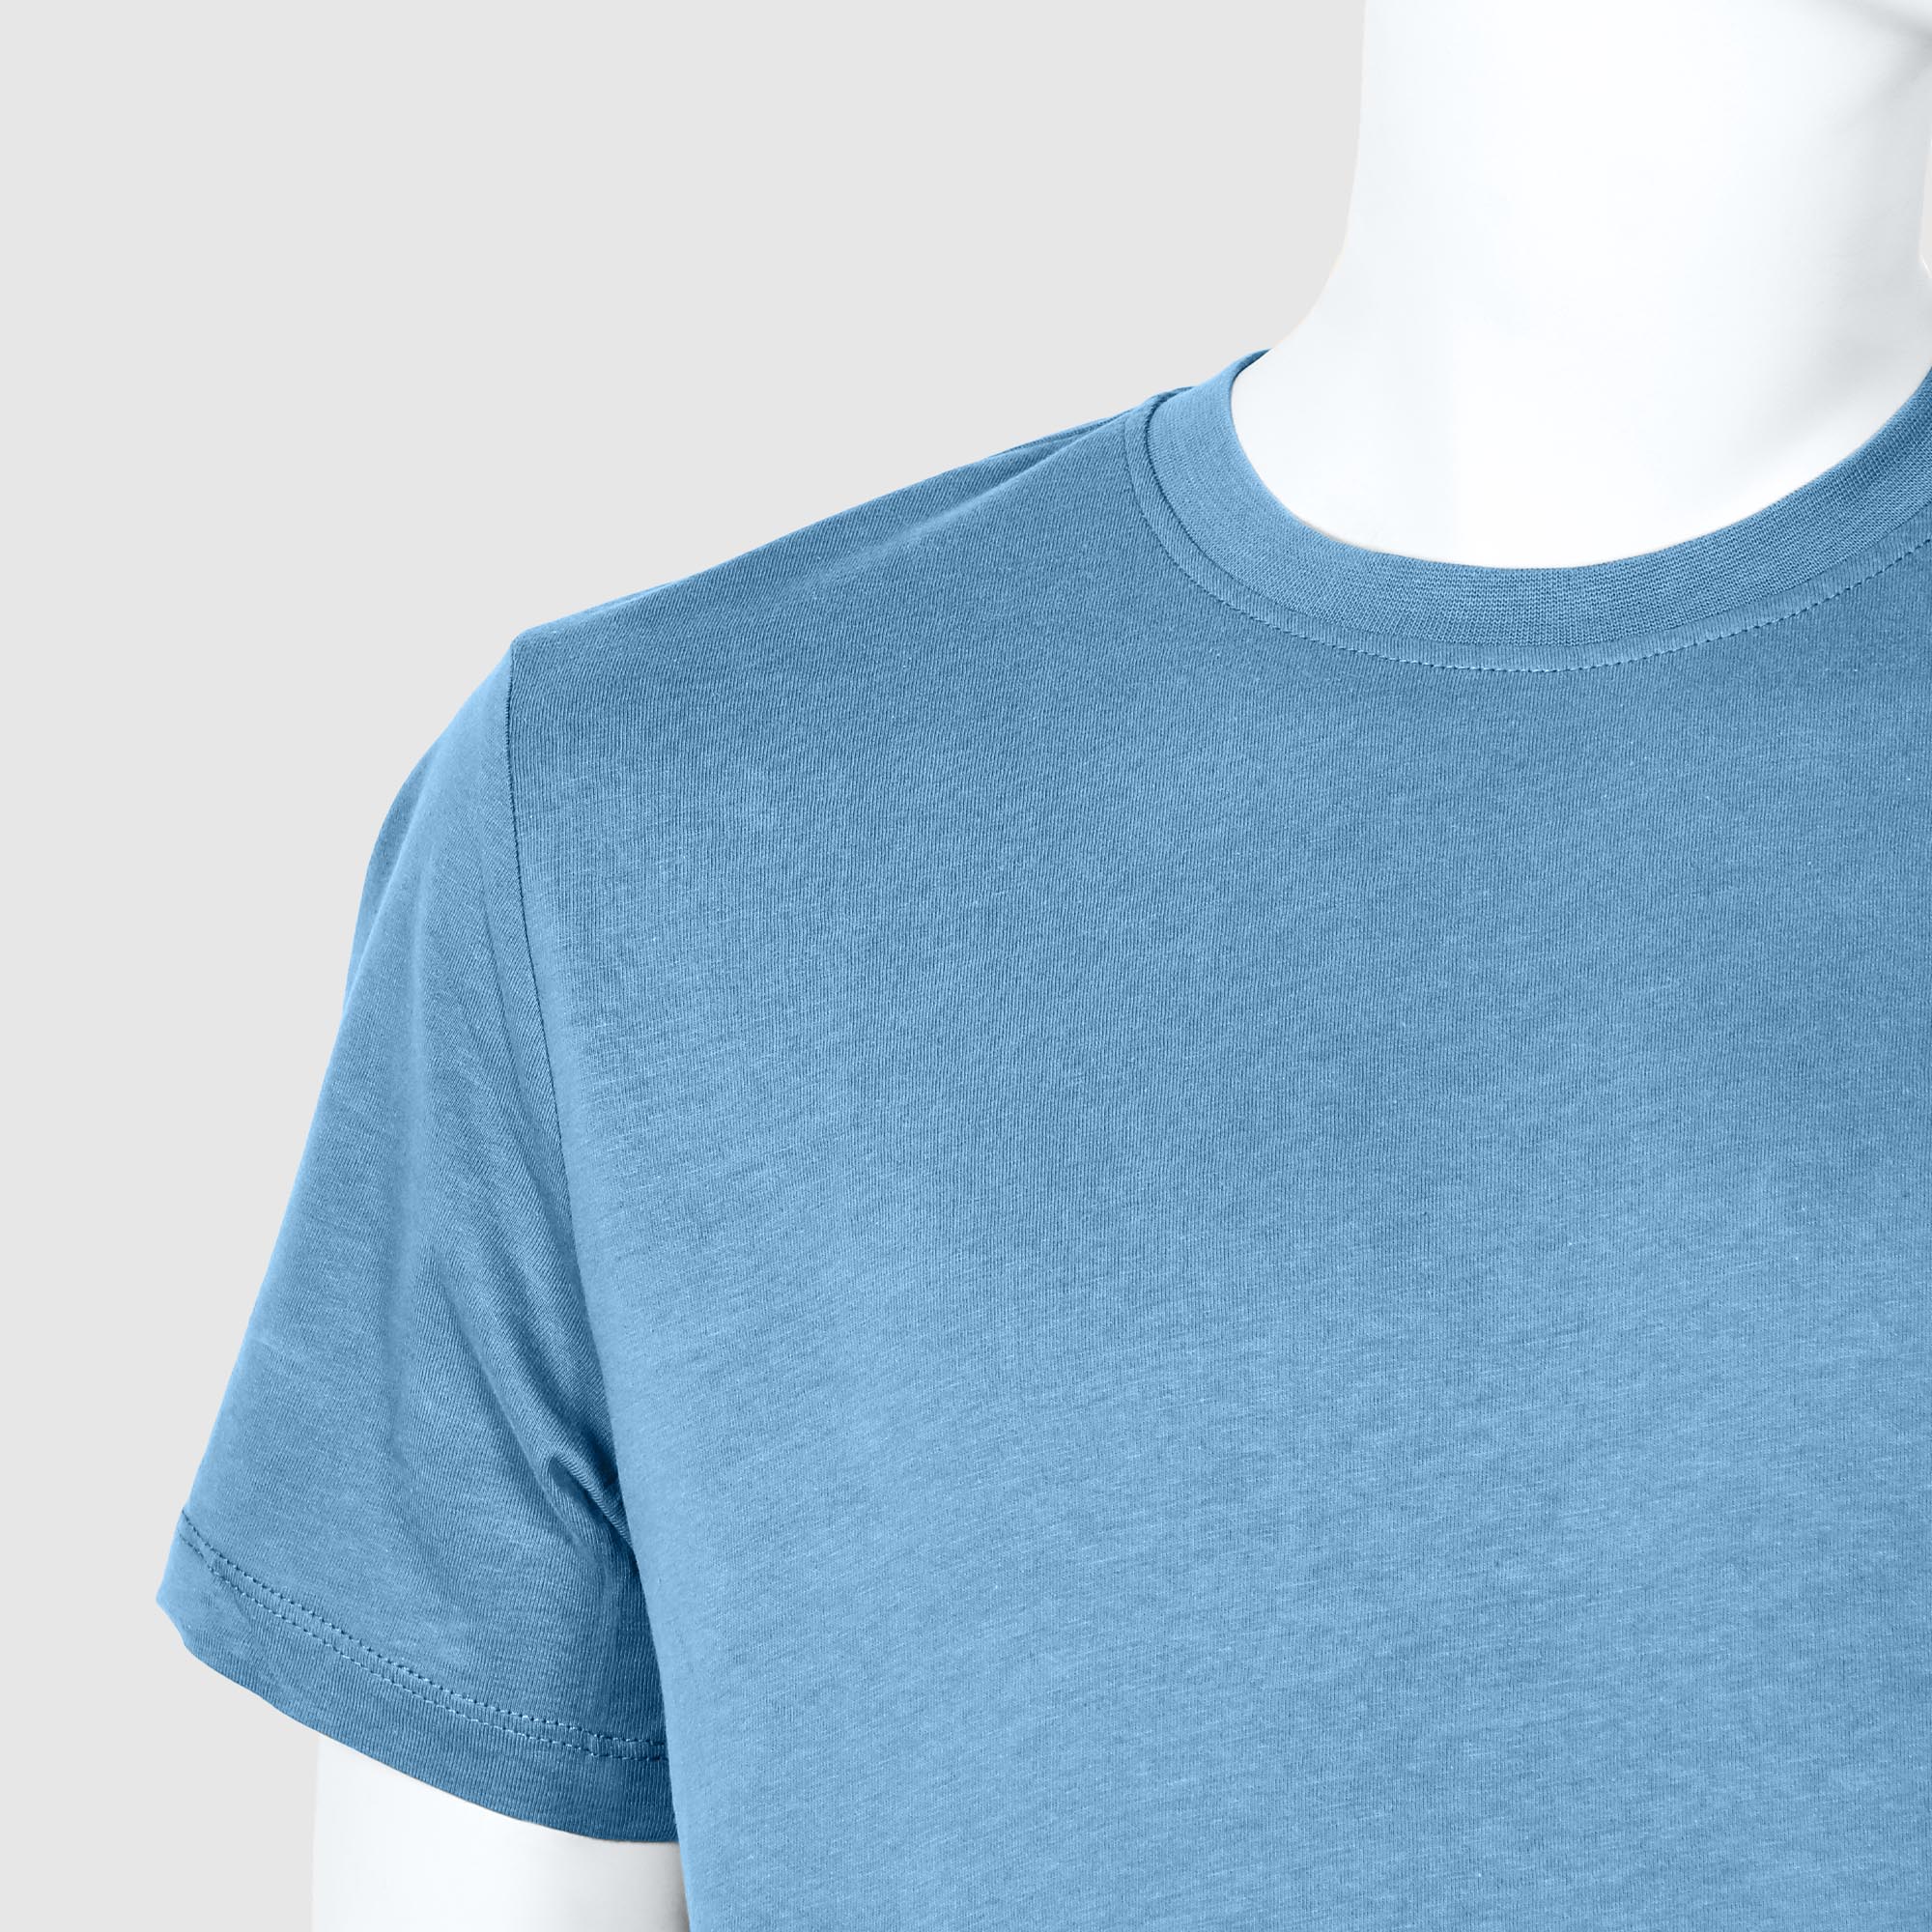 Мужская футболка Diva Teks голубая (DTD-03), цвет голубой, размер 46-48 - фото 3